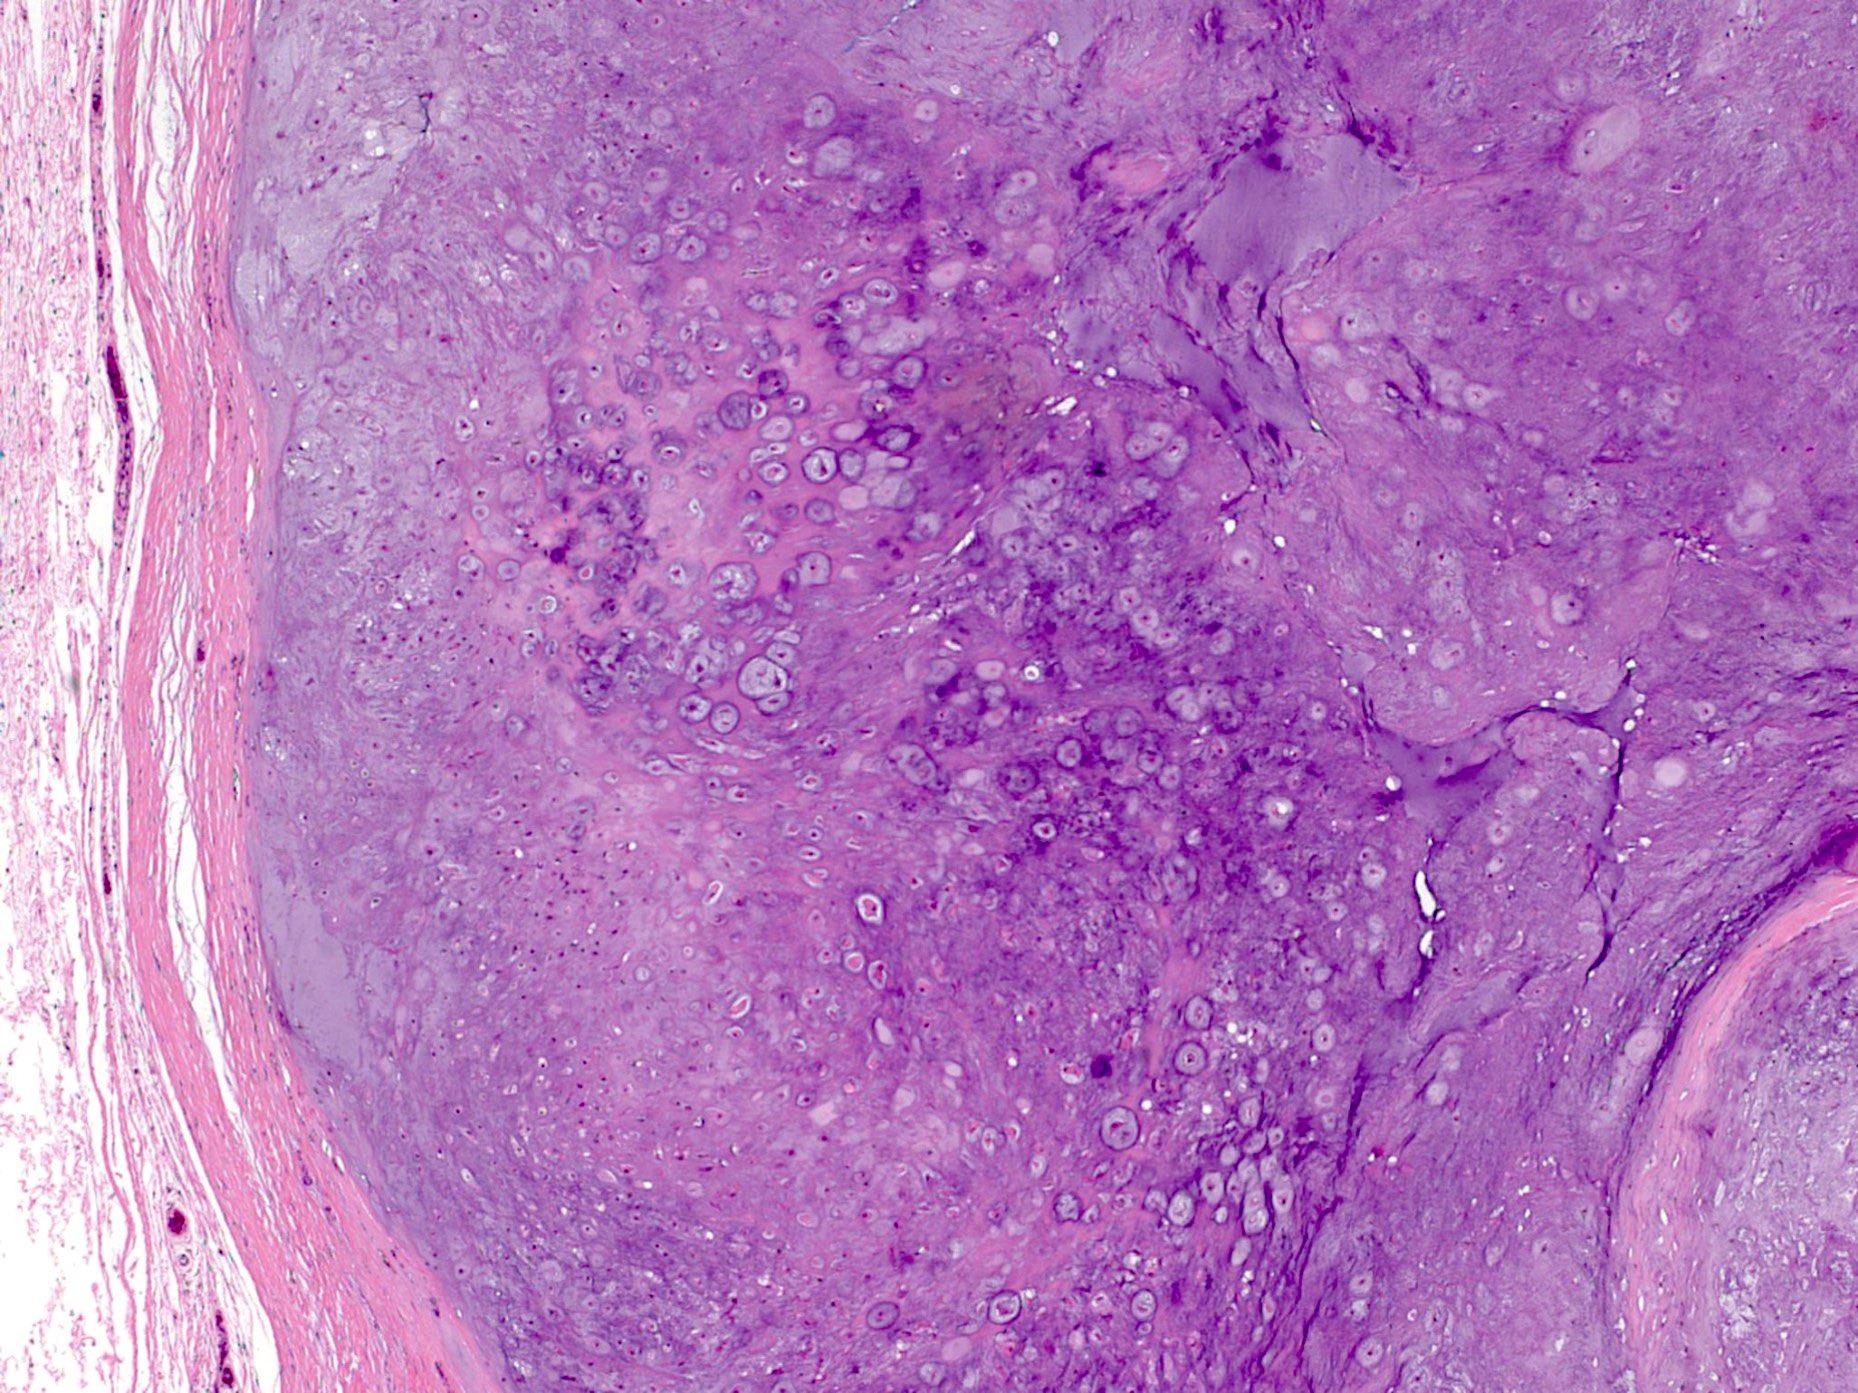 Fibrous pseudocapsule